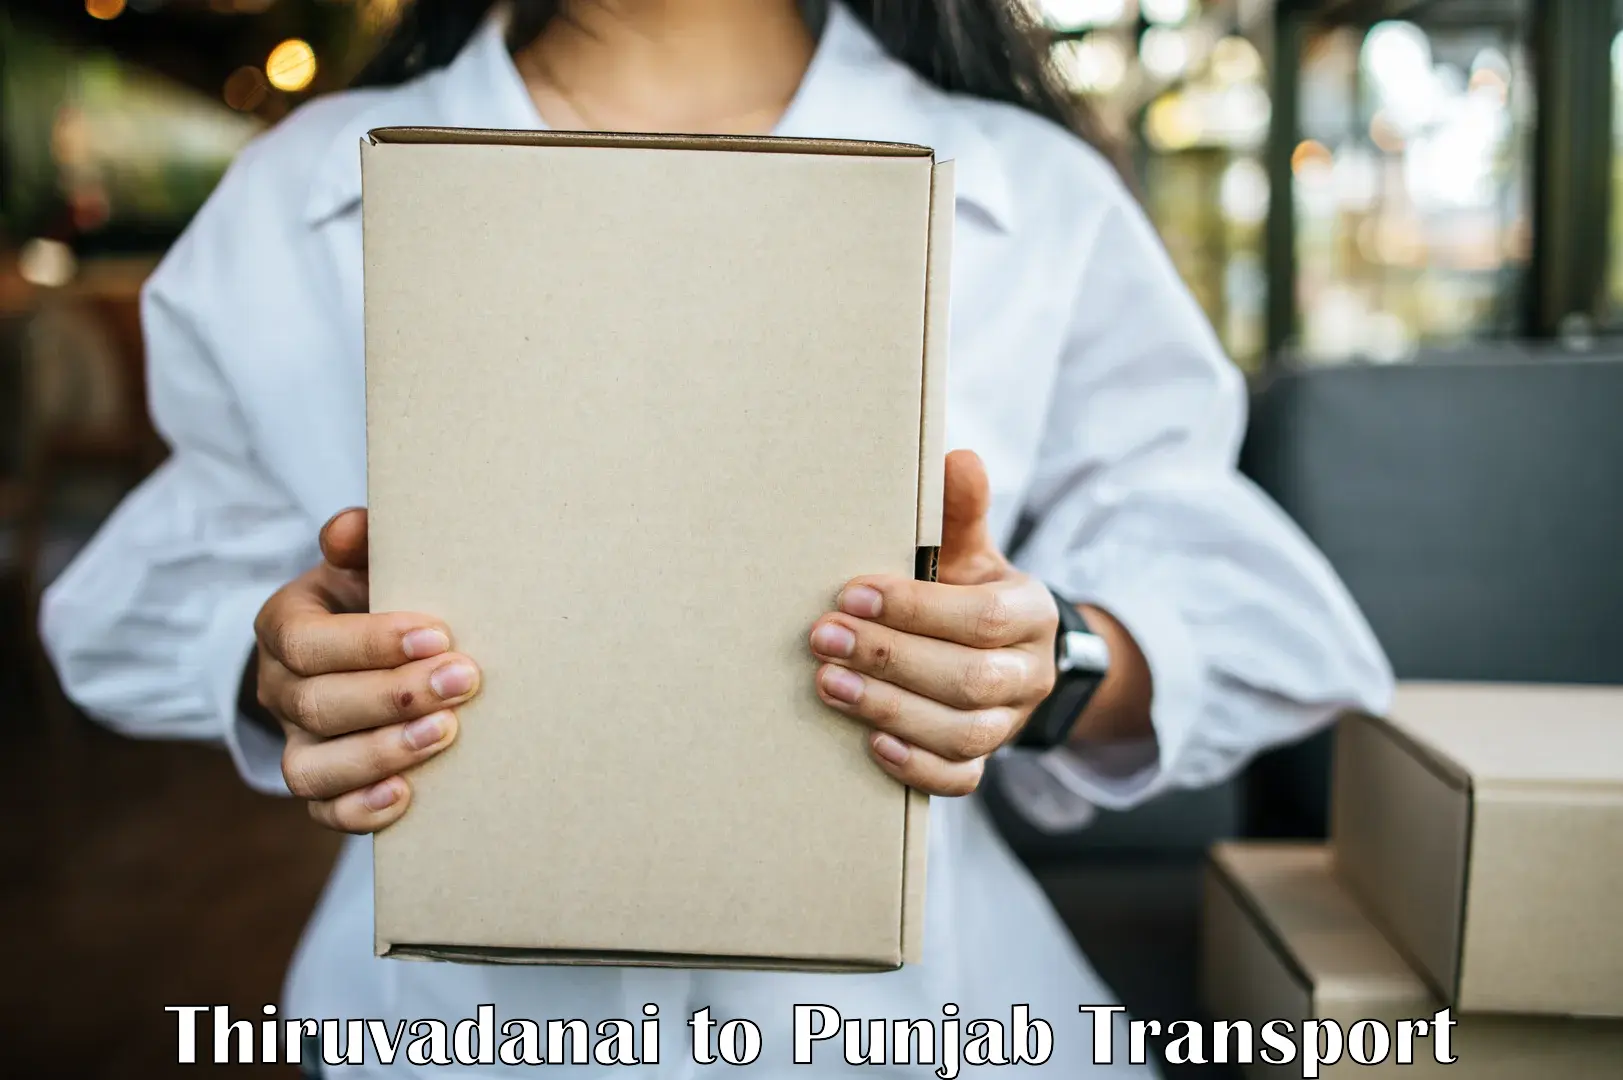 Daily parcel service transport Thiruvadanai to Ajnala